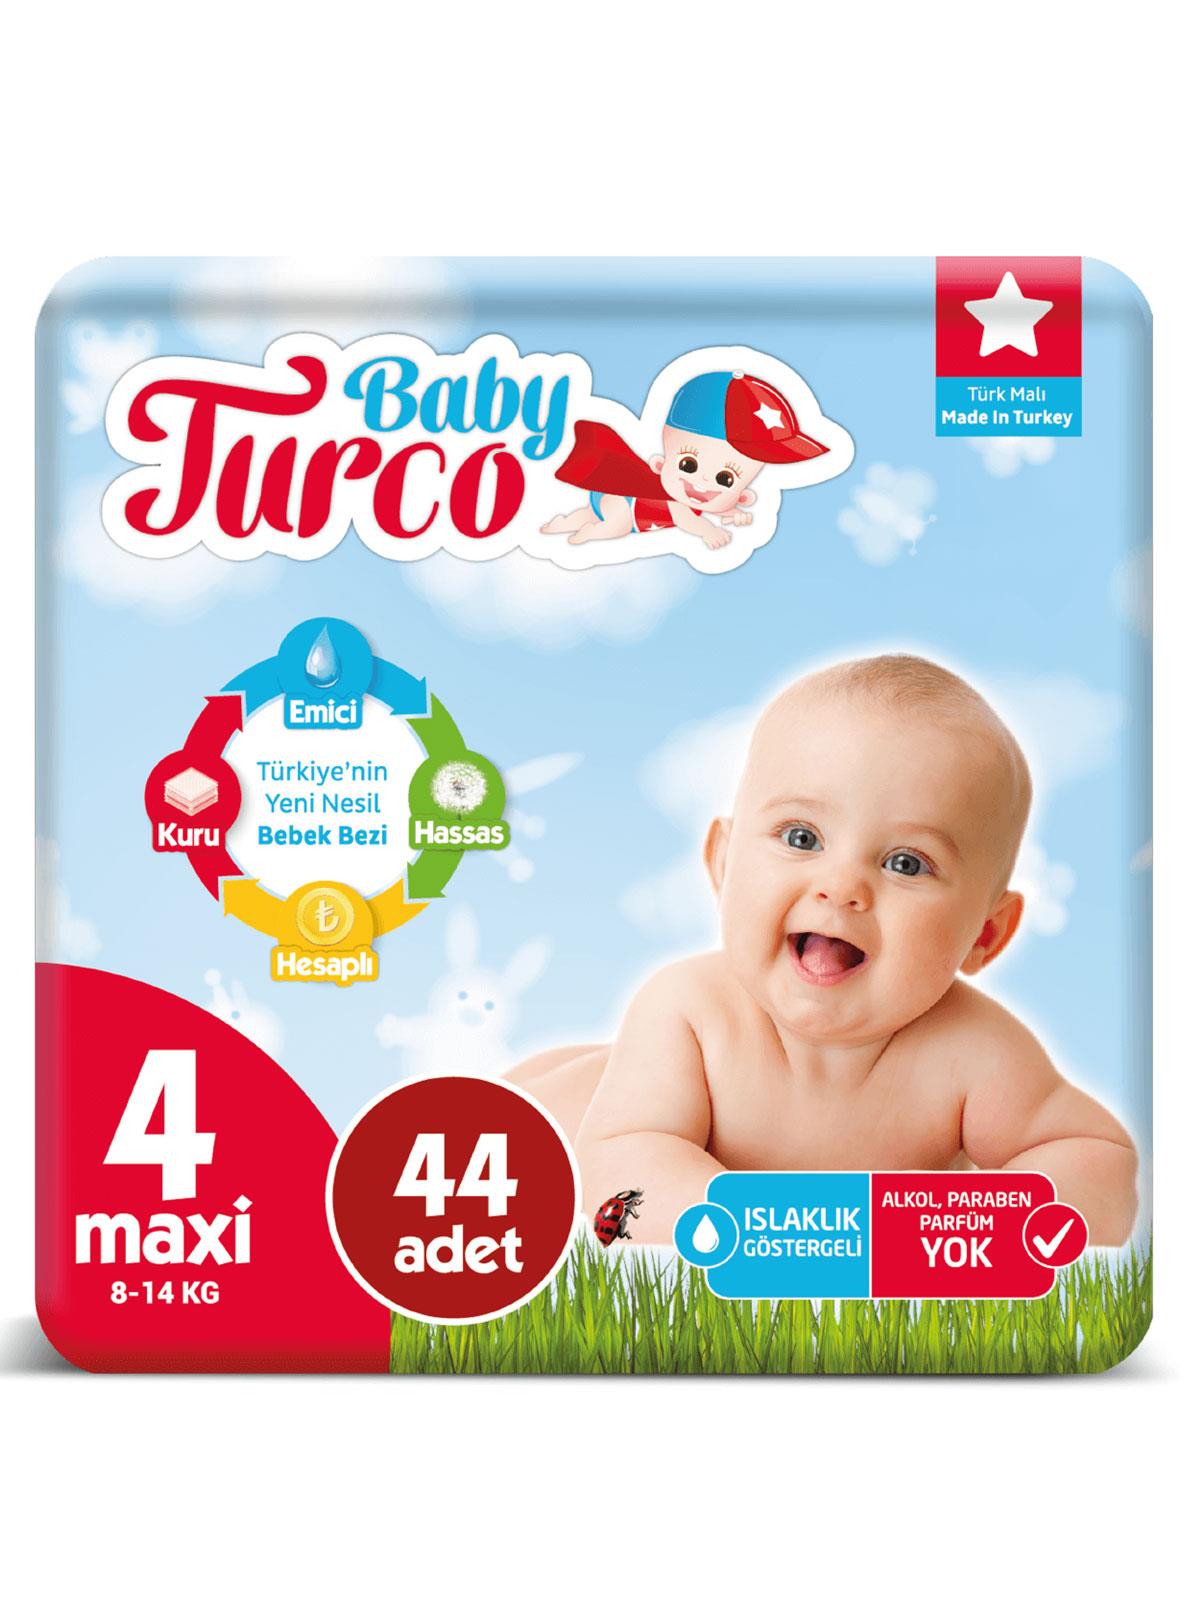 Baby Turco Bebek Bezi 4 Beden Maxi 44 Adet